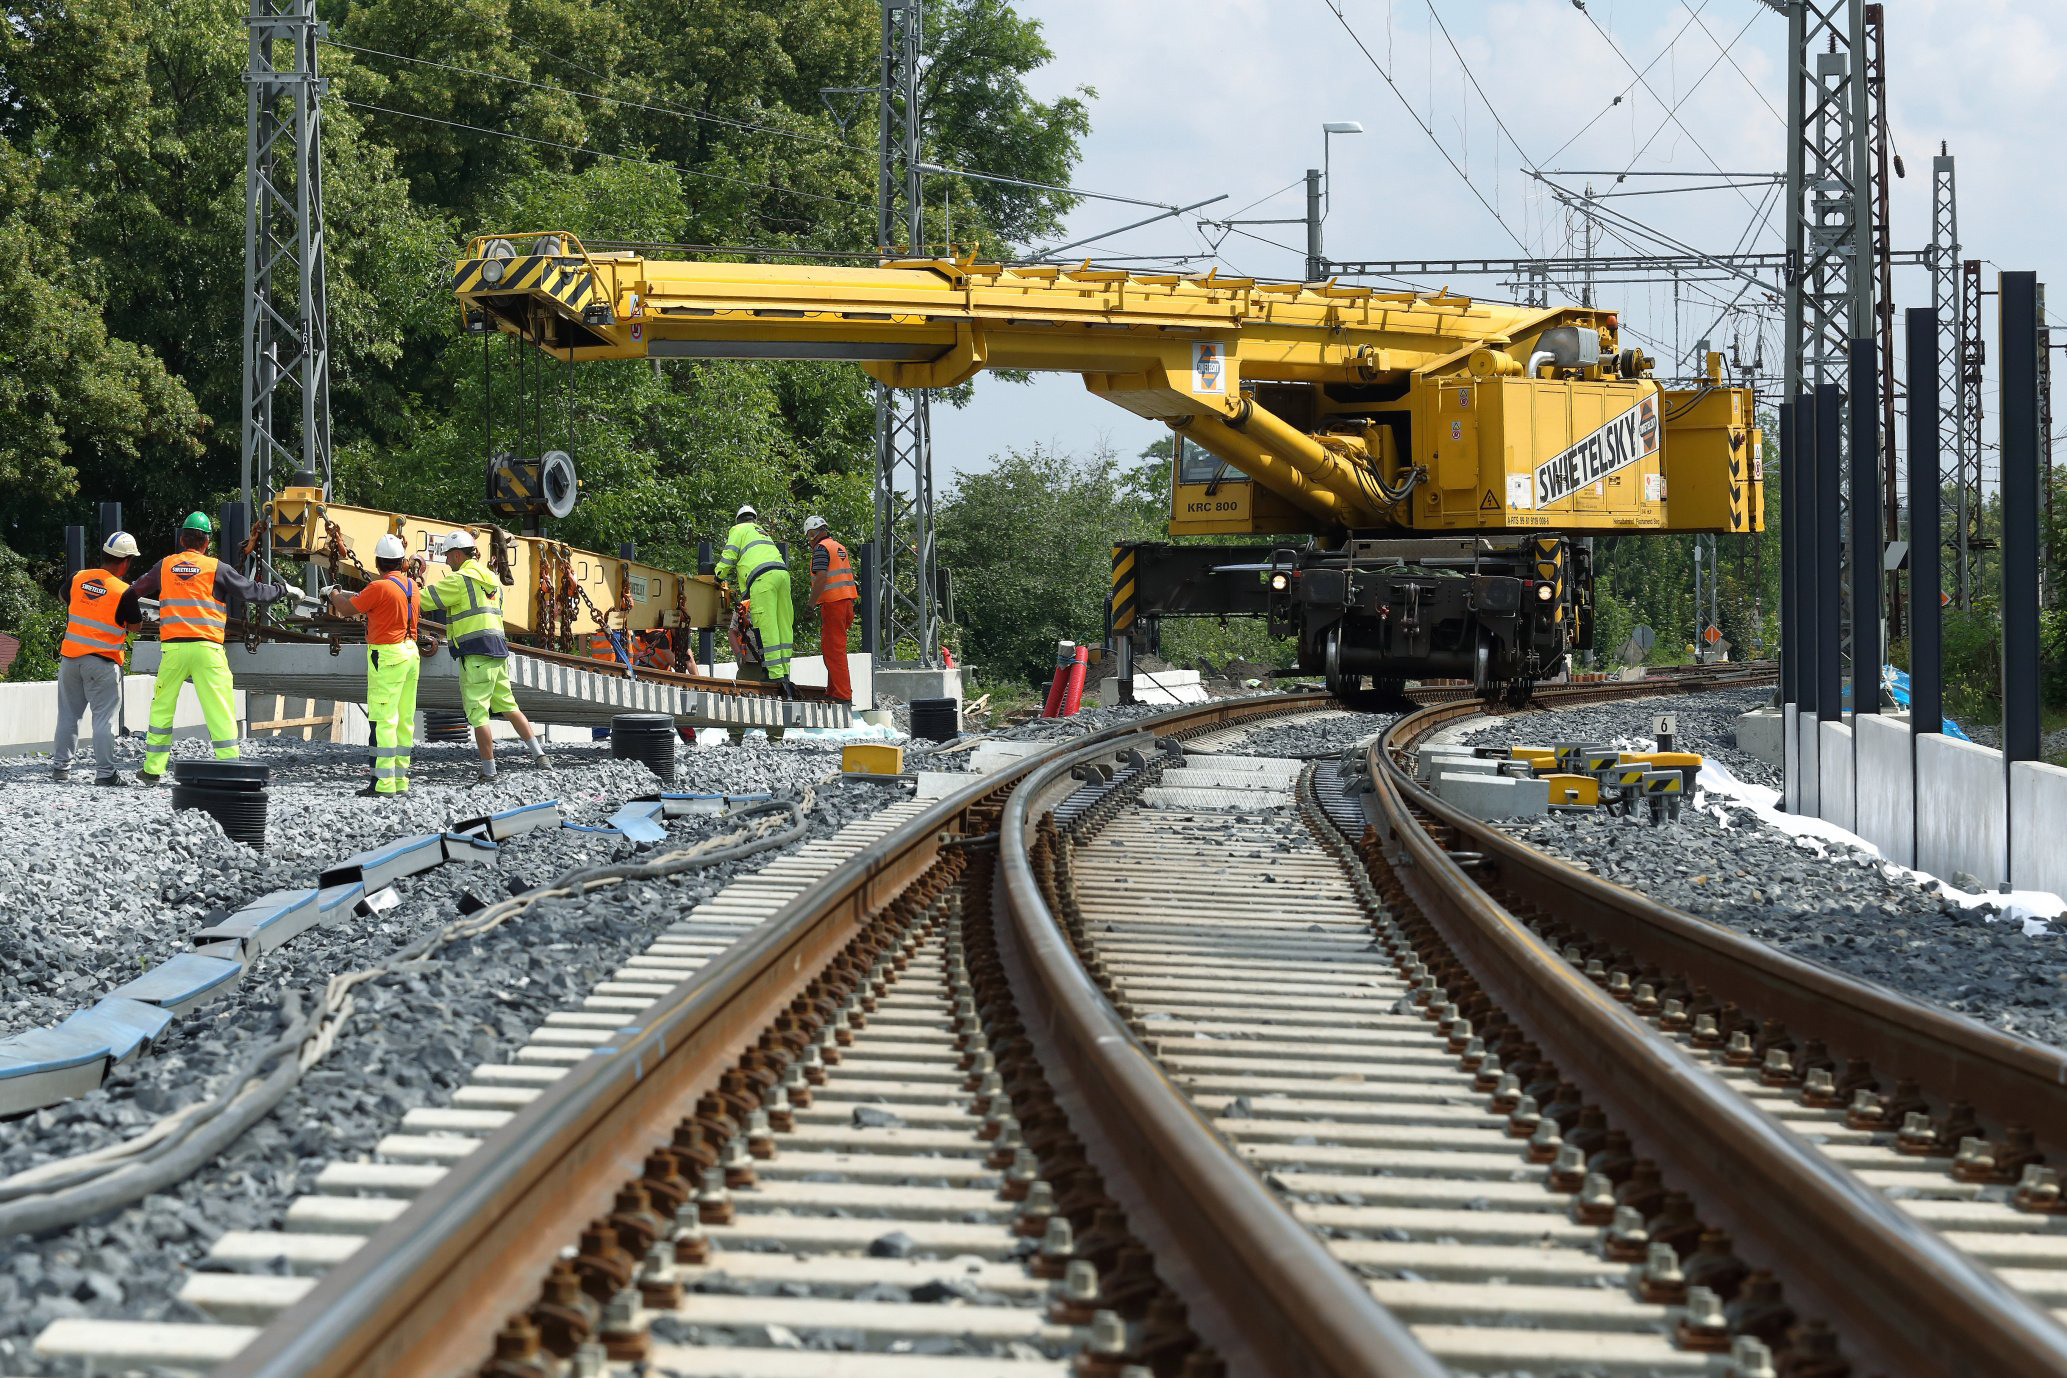 Obnova železniční stanice, Čelákovice - Jernbanebygging